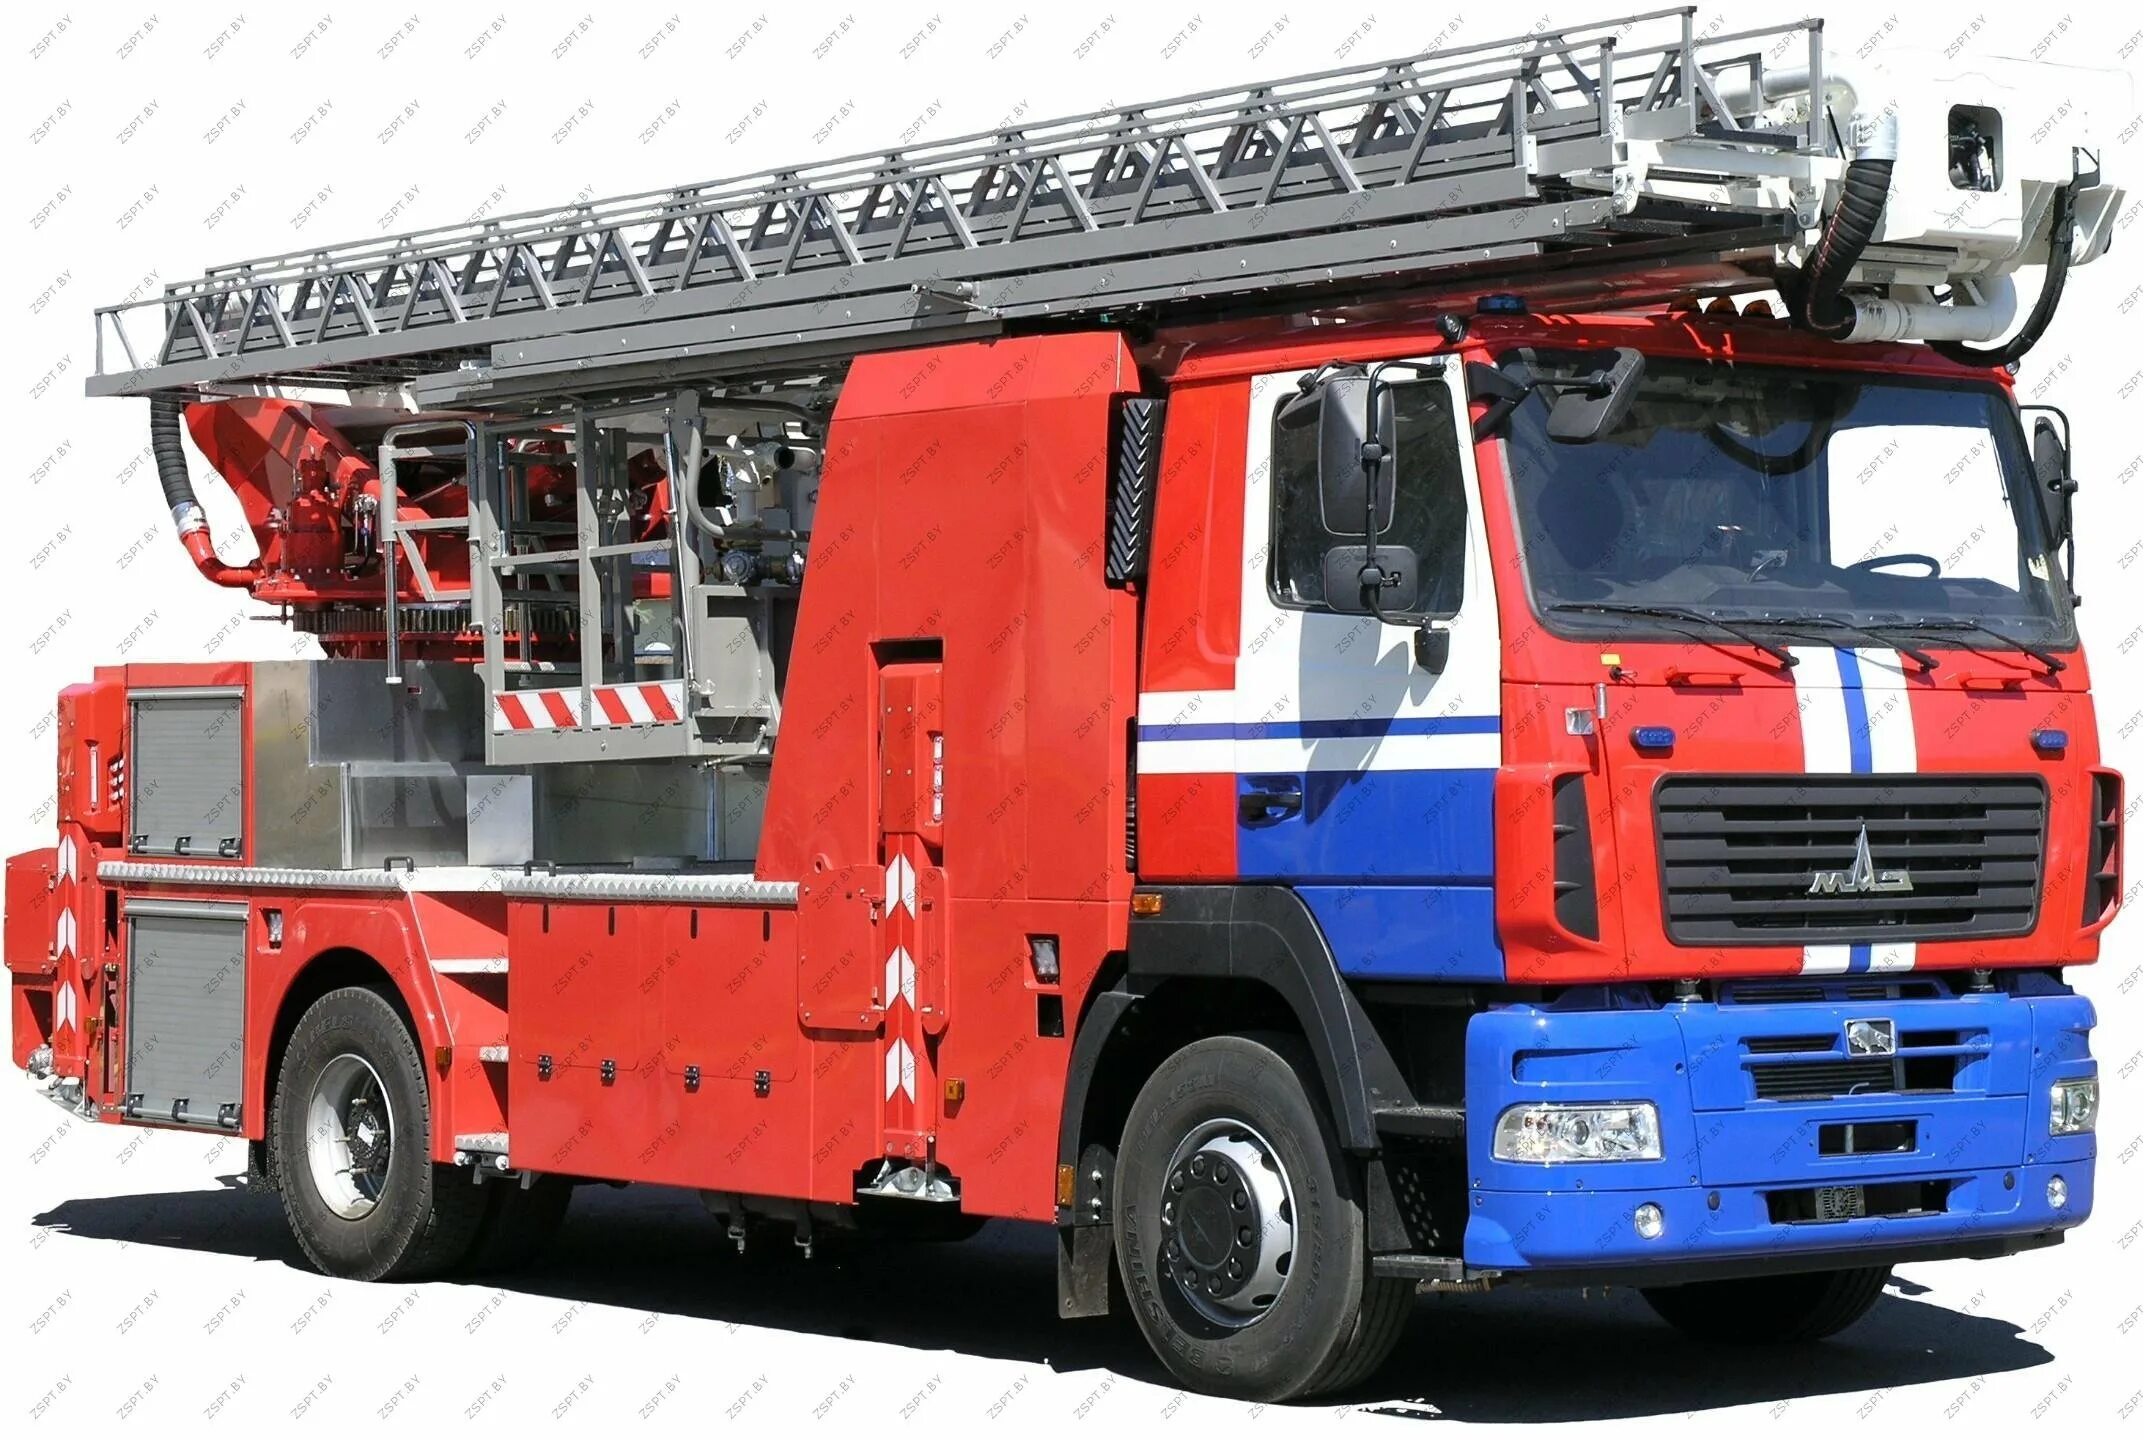 Пожарный автомобиль лестница. Автолестница пожарная ал-32 (5340). Пожарная автолестница МАЗ. Автолестница пожарная ал-30 МАЗ. Автолестница пожарная ал-30 (5340).